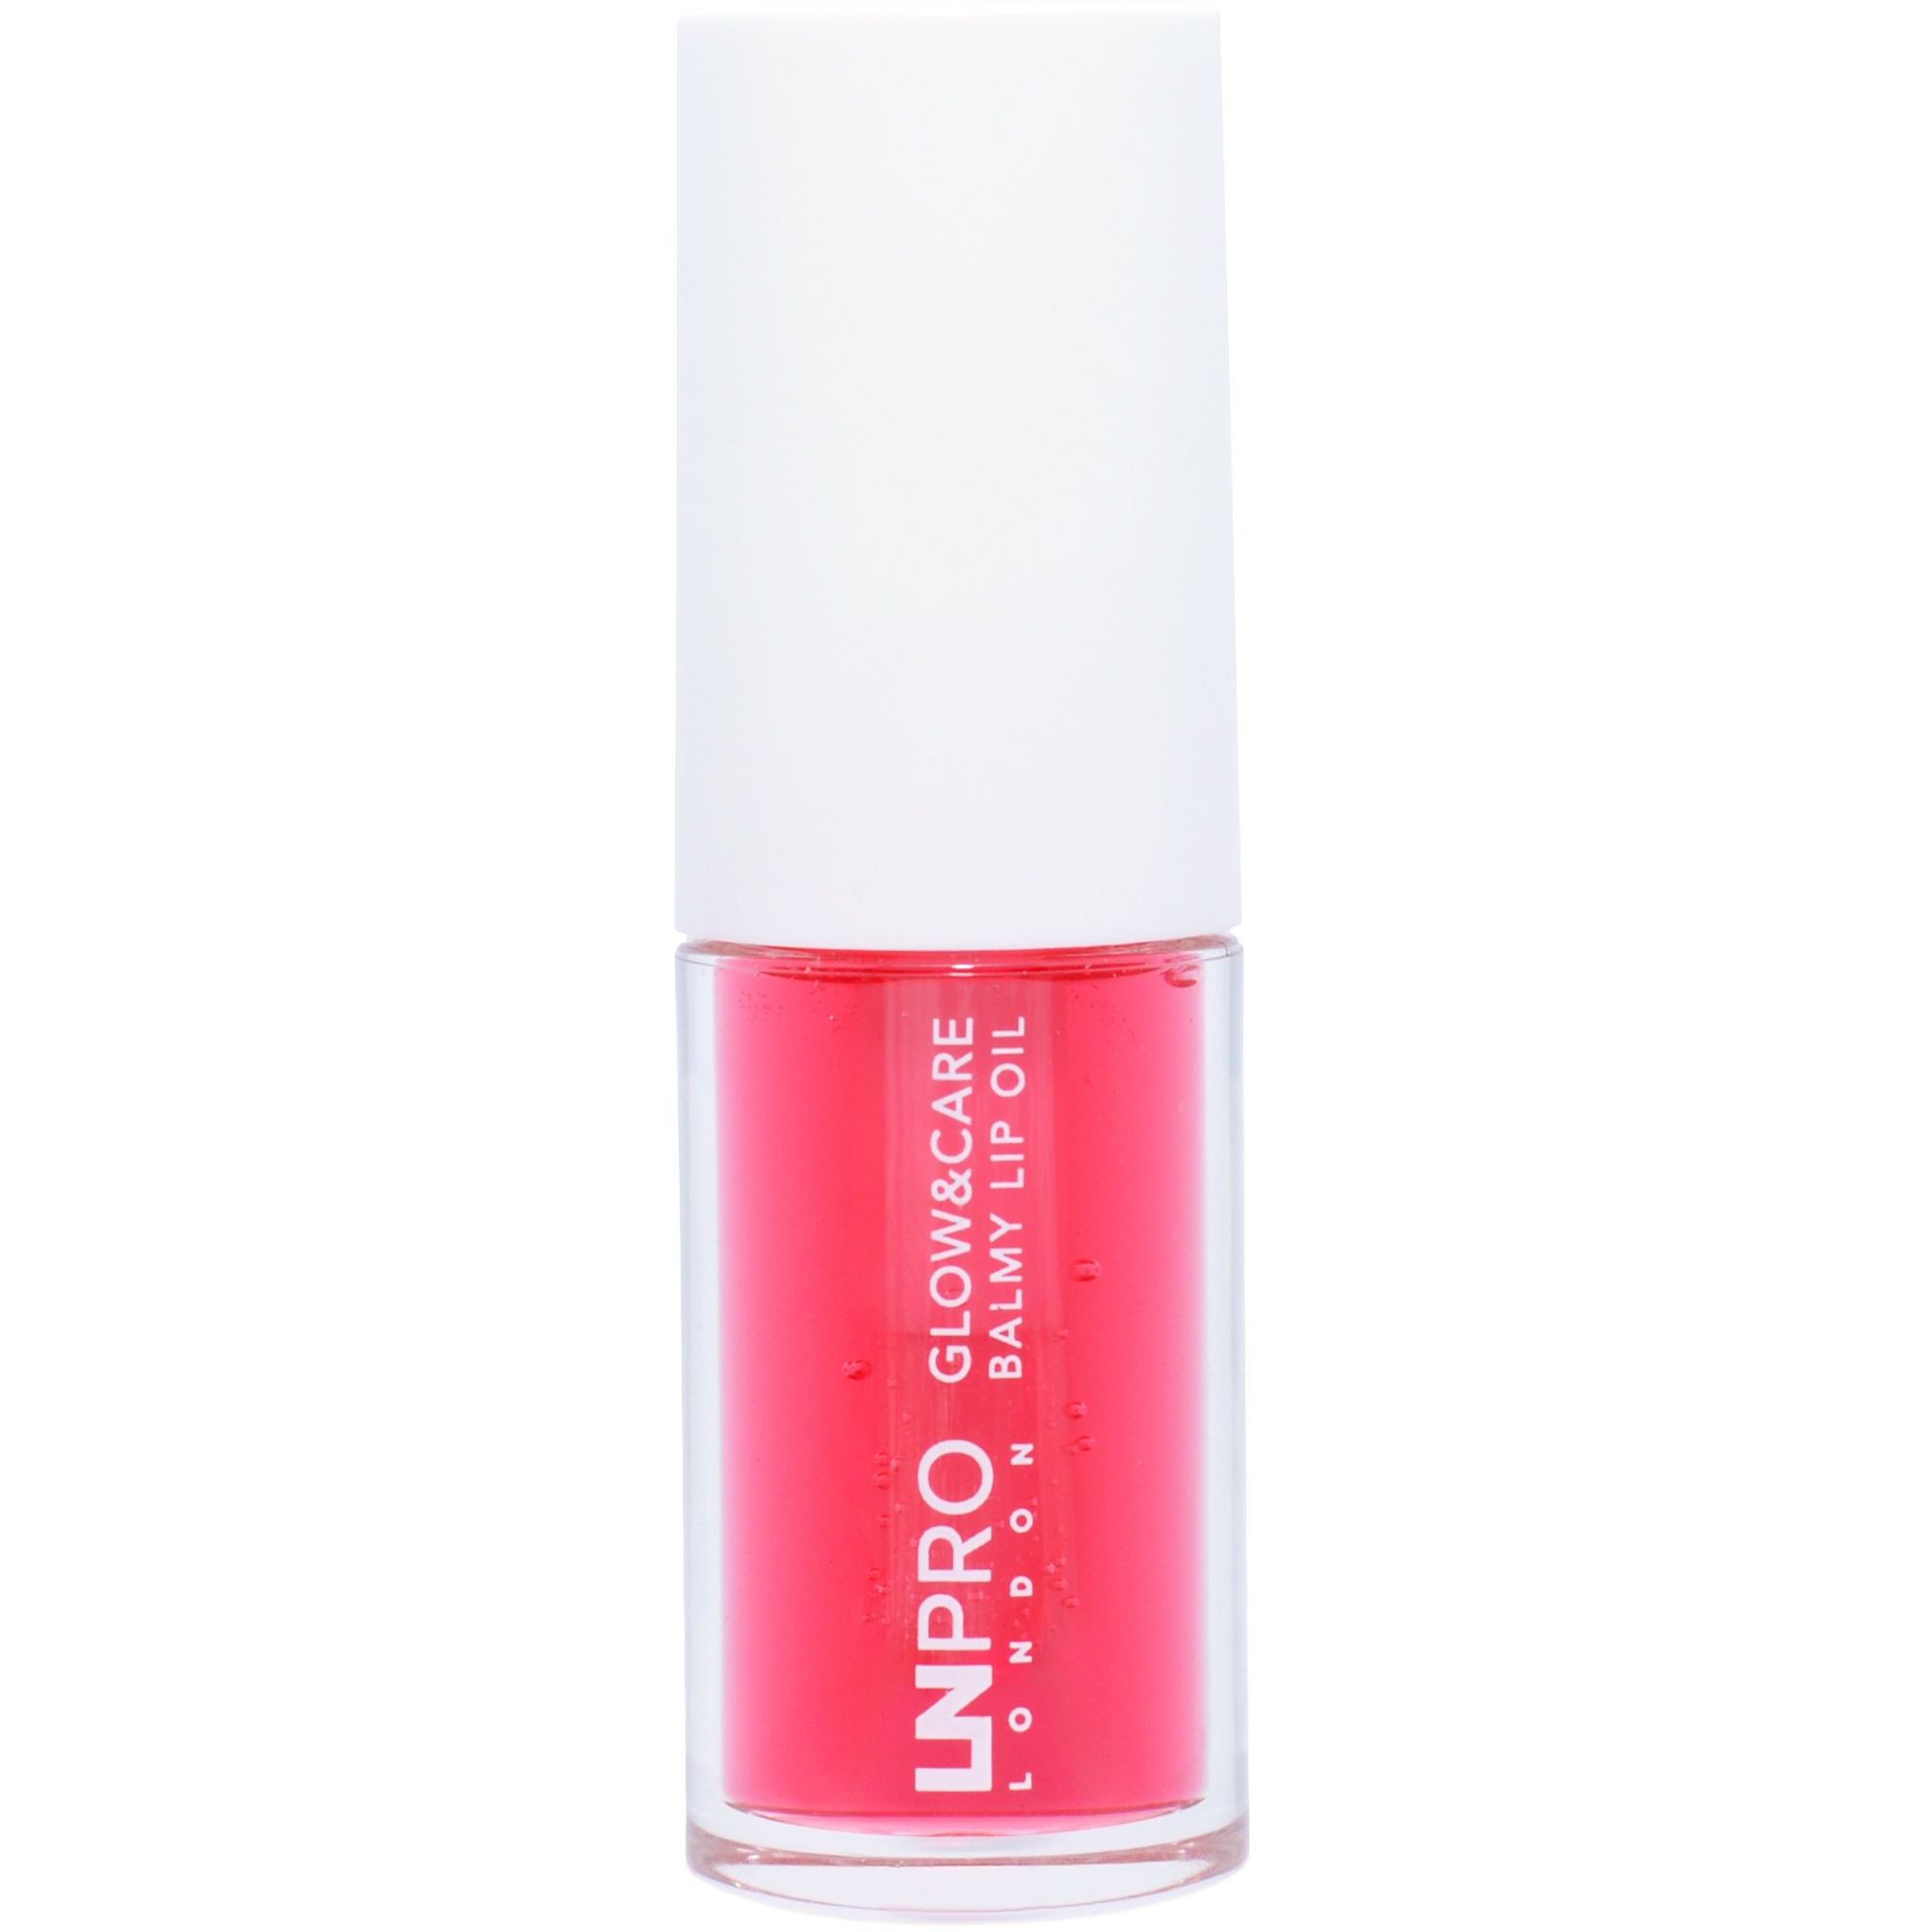 Олія-бальзам для губ LN Pro Glow & Care Balmy Lip Oil відтінок 101, 3.7 мл - фото 5